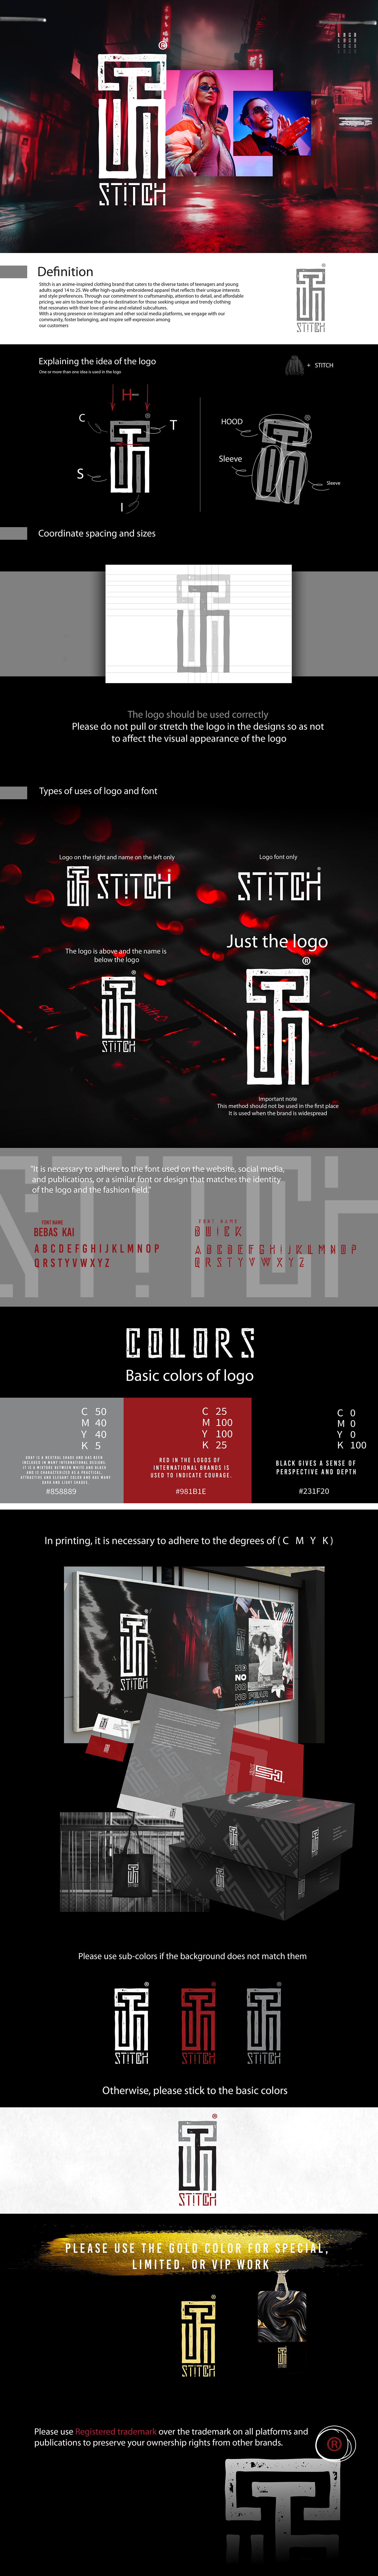 logo brand identity Logo Design visual identity adobe illustrator Brand Design identity brand logos Logotype